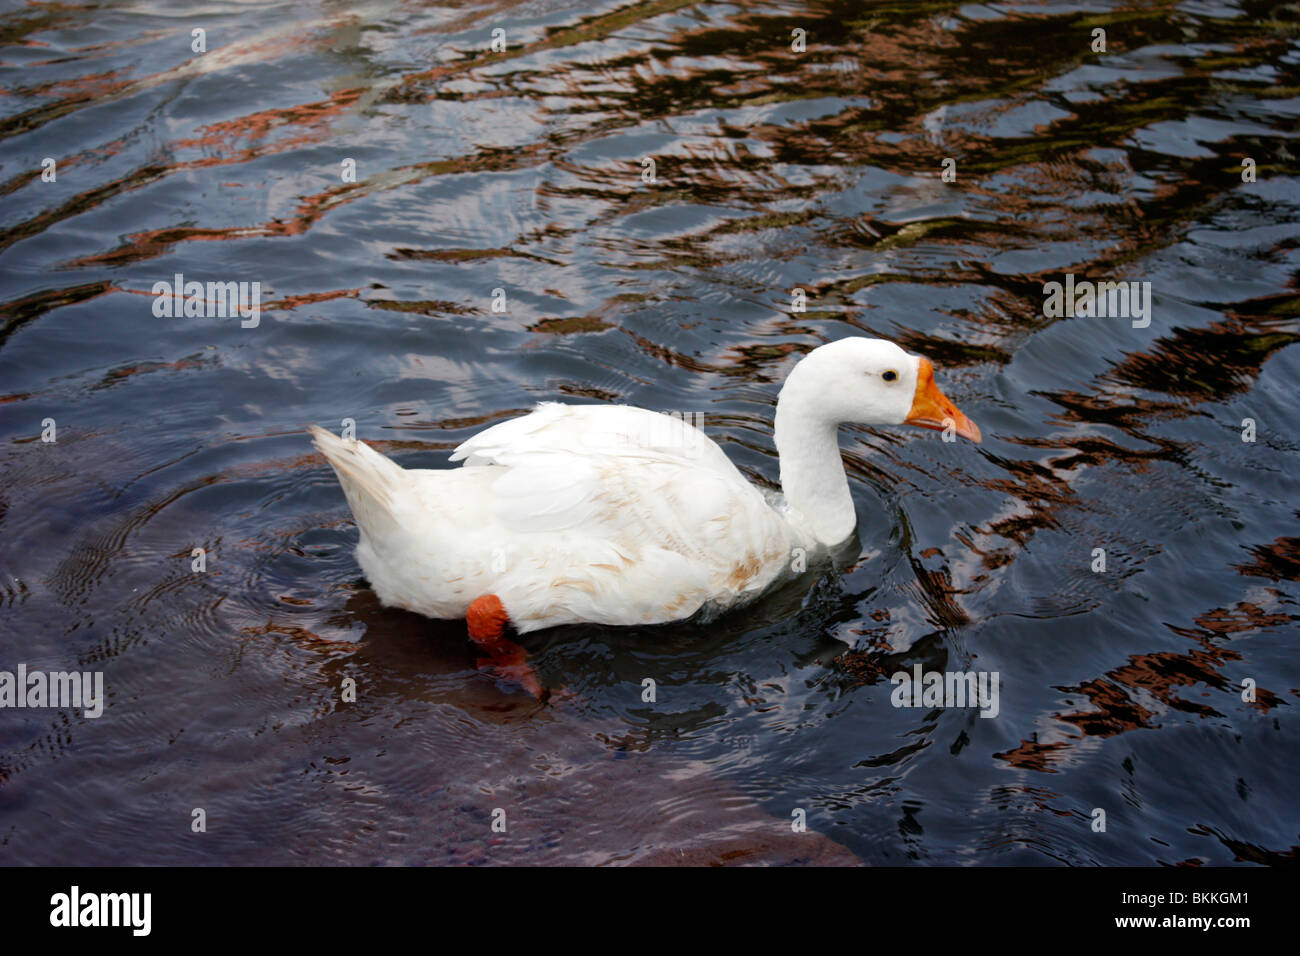 Ritratto di un anatra bianco nuoto attraverso un laghetto rilassata Foto Stock